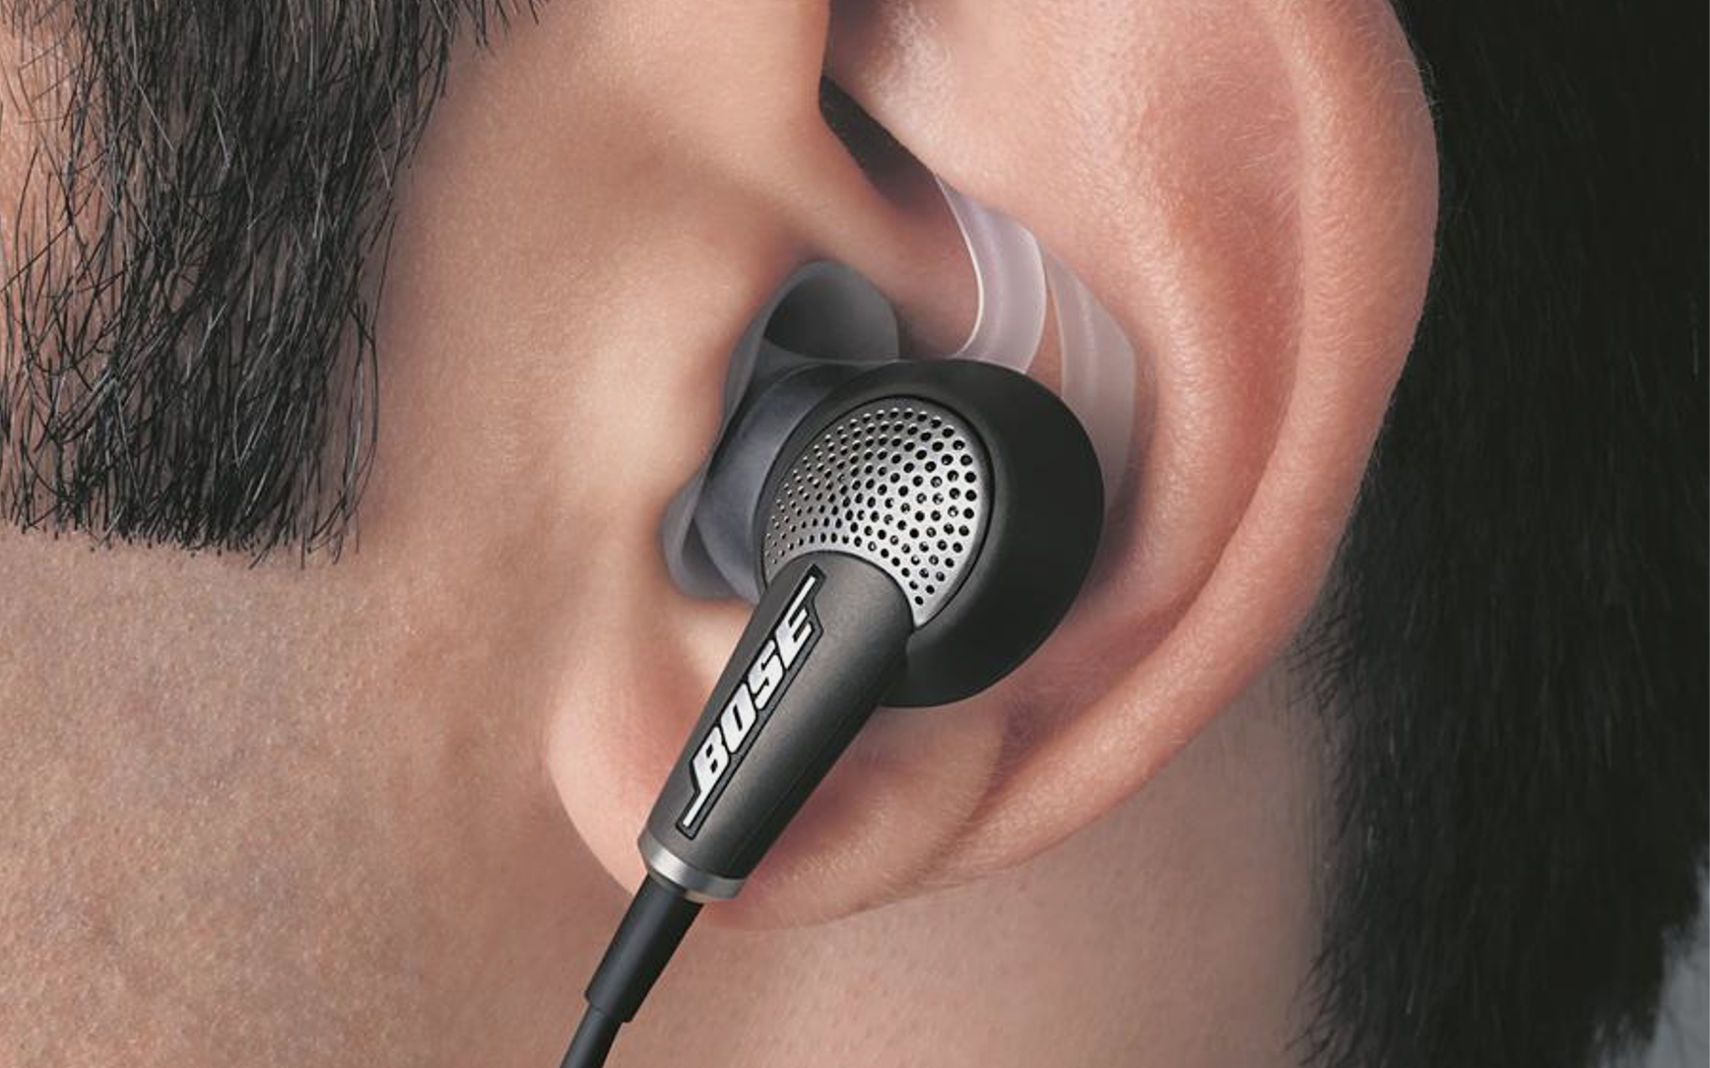 Bose Quiet Comfort 20 Acoustic Noise Cancelling Headphones